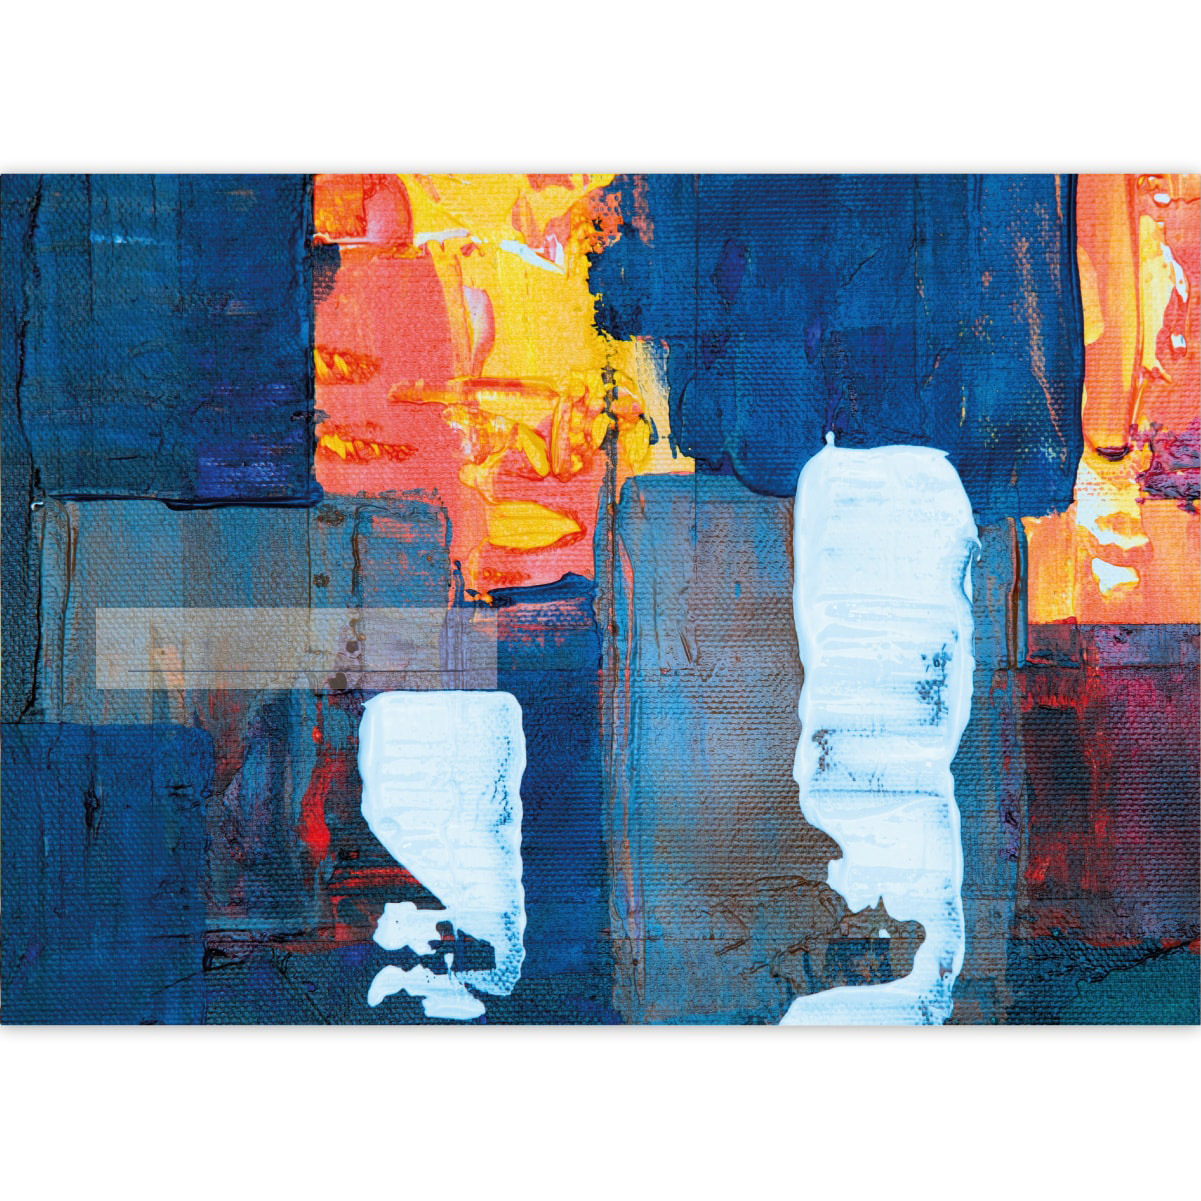 Kartenkaufrausch: Malblock Motiv "Komposition in blau" aus unserer Malblock Papeterie in blau